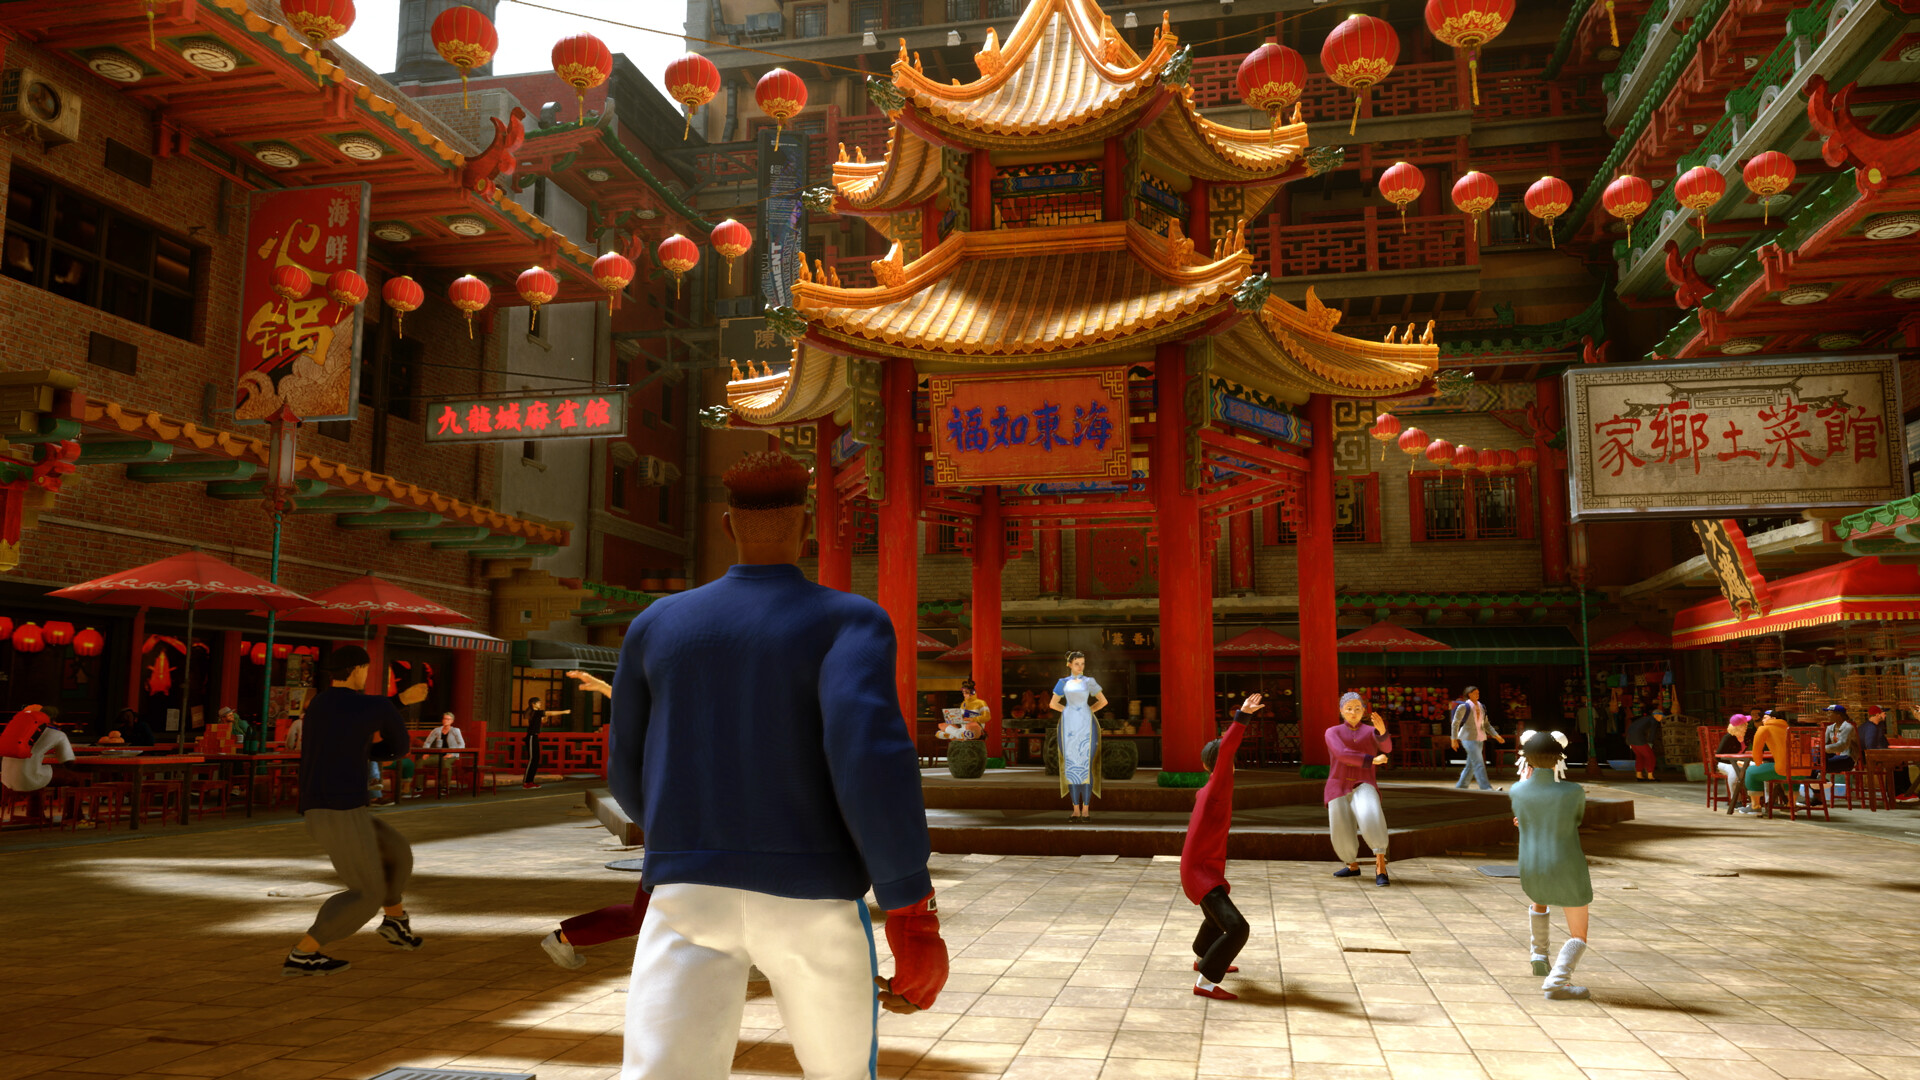 Street Fighter 6 bate recordes no Steam! Veja preço e requisitos